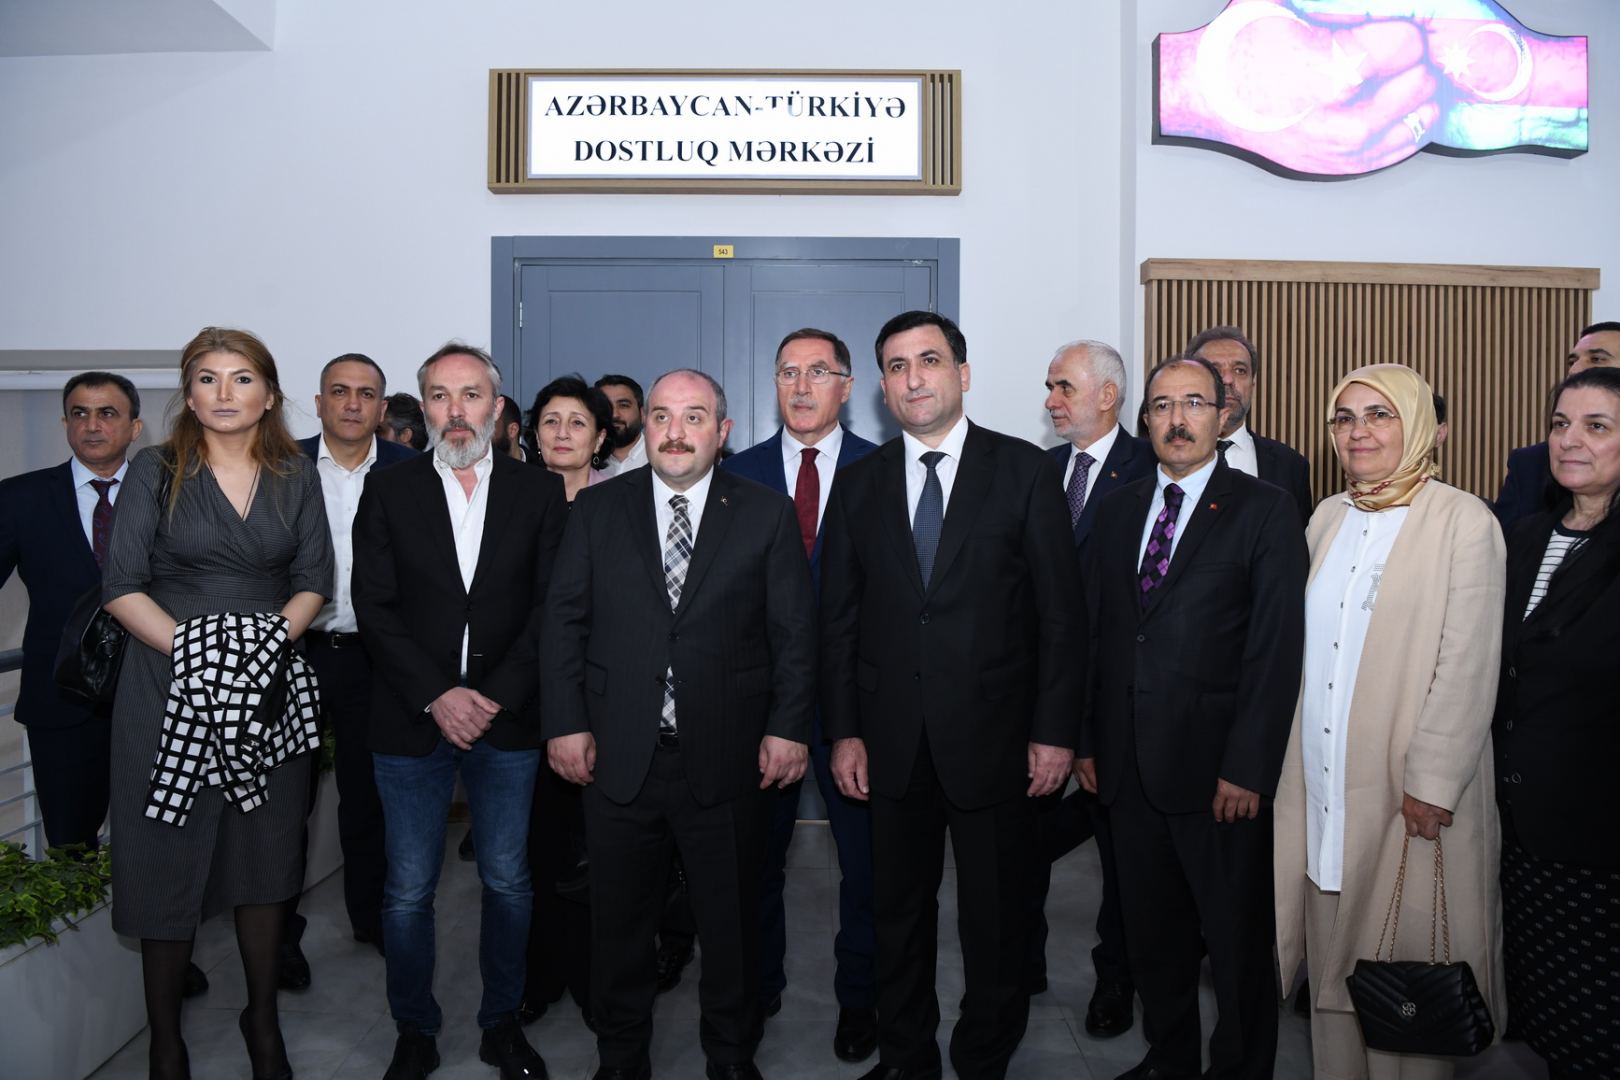 ADNSU-da Azərbaycan-Türkiyə Dostluq Mərkəzinin açılışı olub (FOTO)